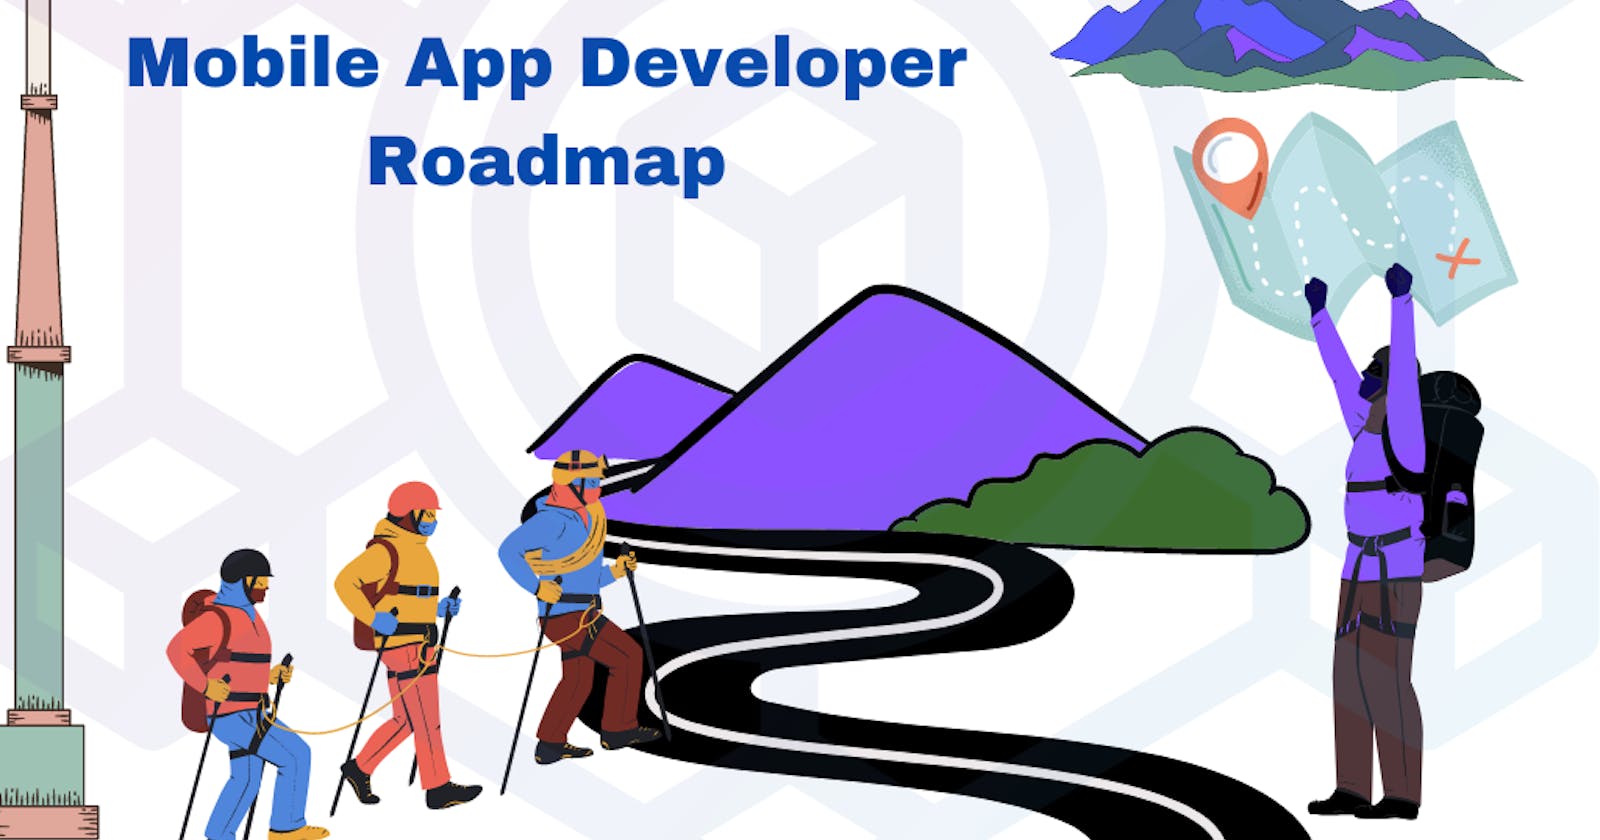 Mobile Application Developer Roadmap